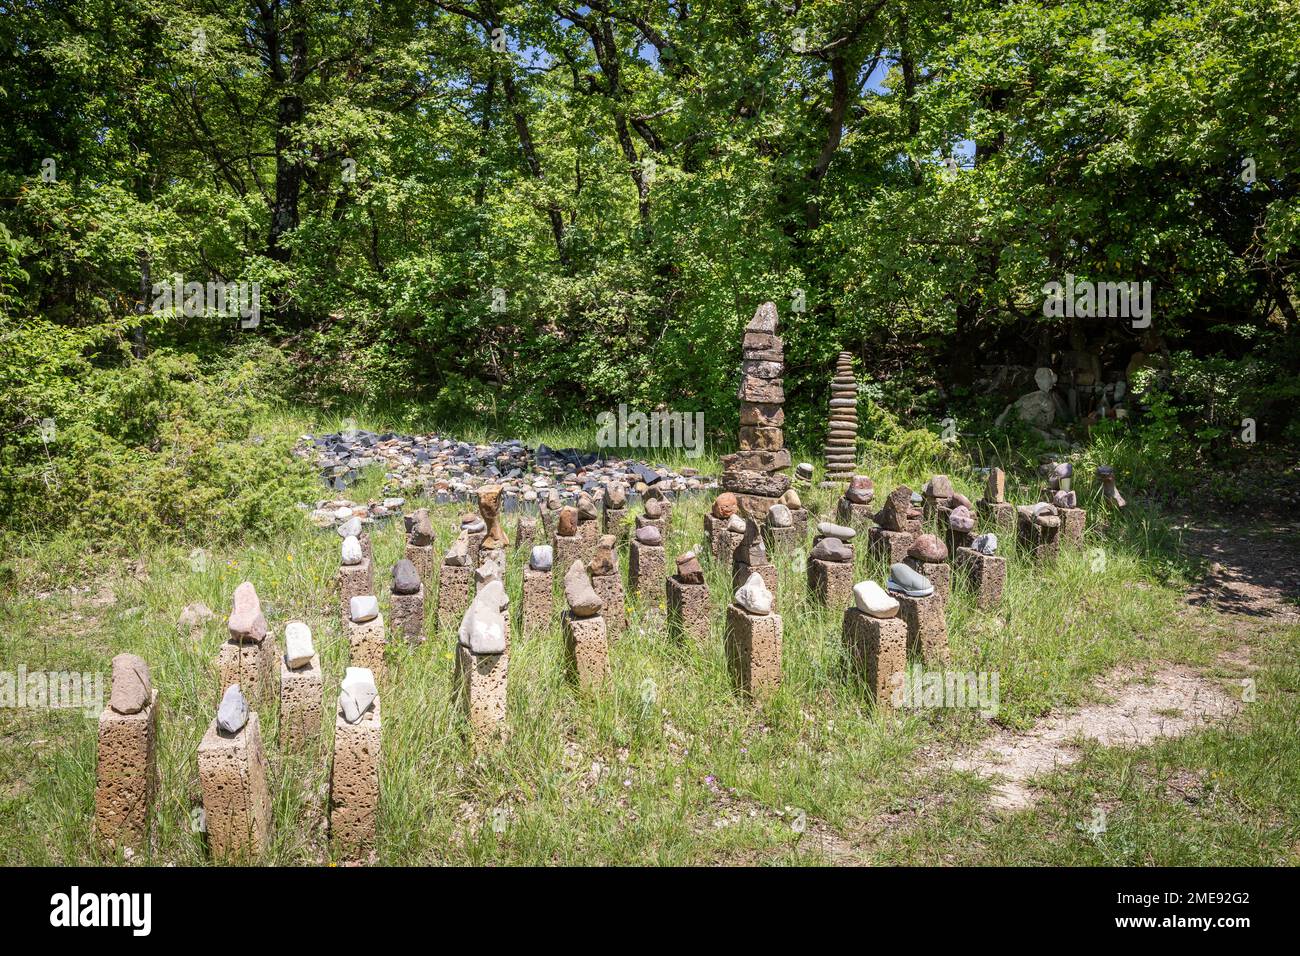 Esculturas de piedra en el mágico parque Dreamwoods, escondido en las colinas de la Toscana, diseñado por el artista alemán Deva Manfredo (Manfred Fluke), Italia. Foto de stock